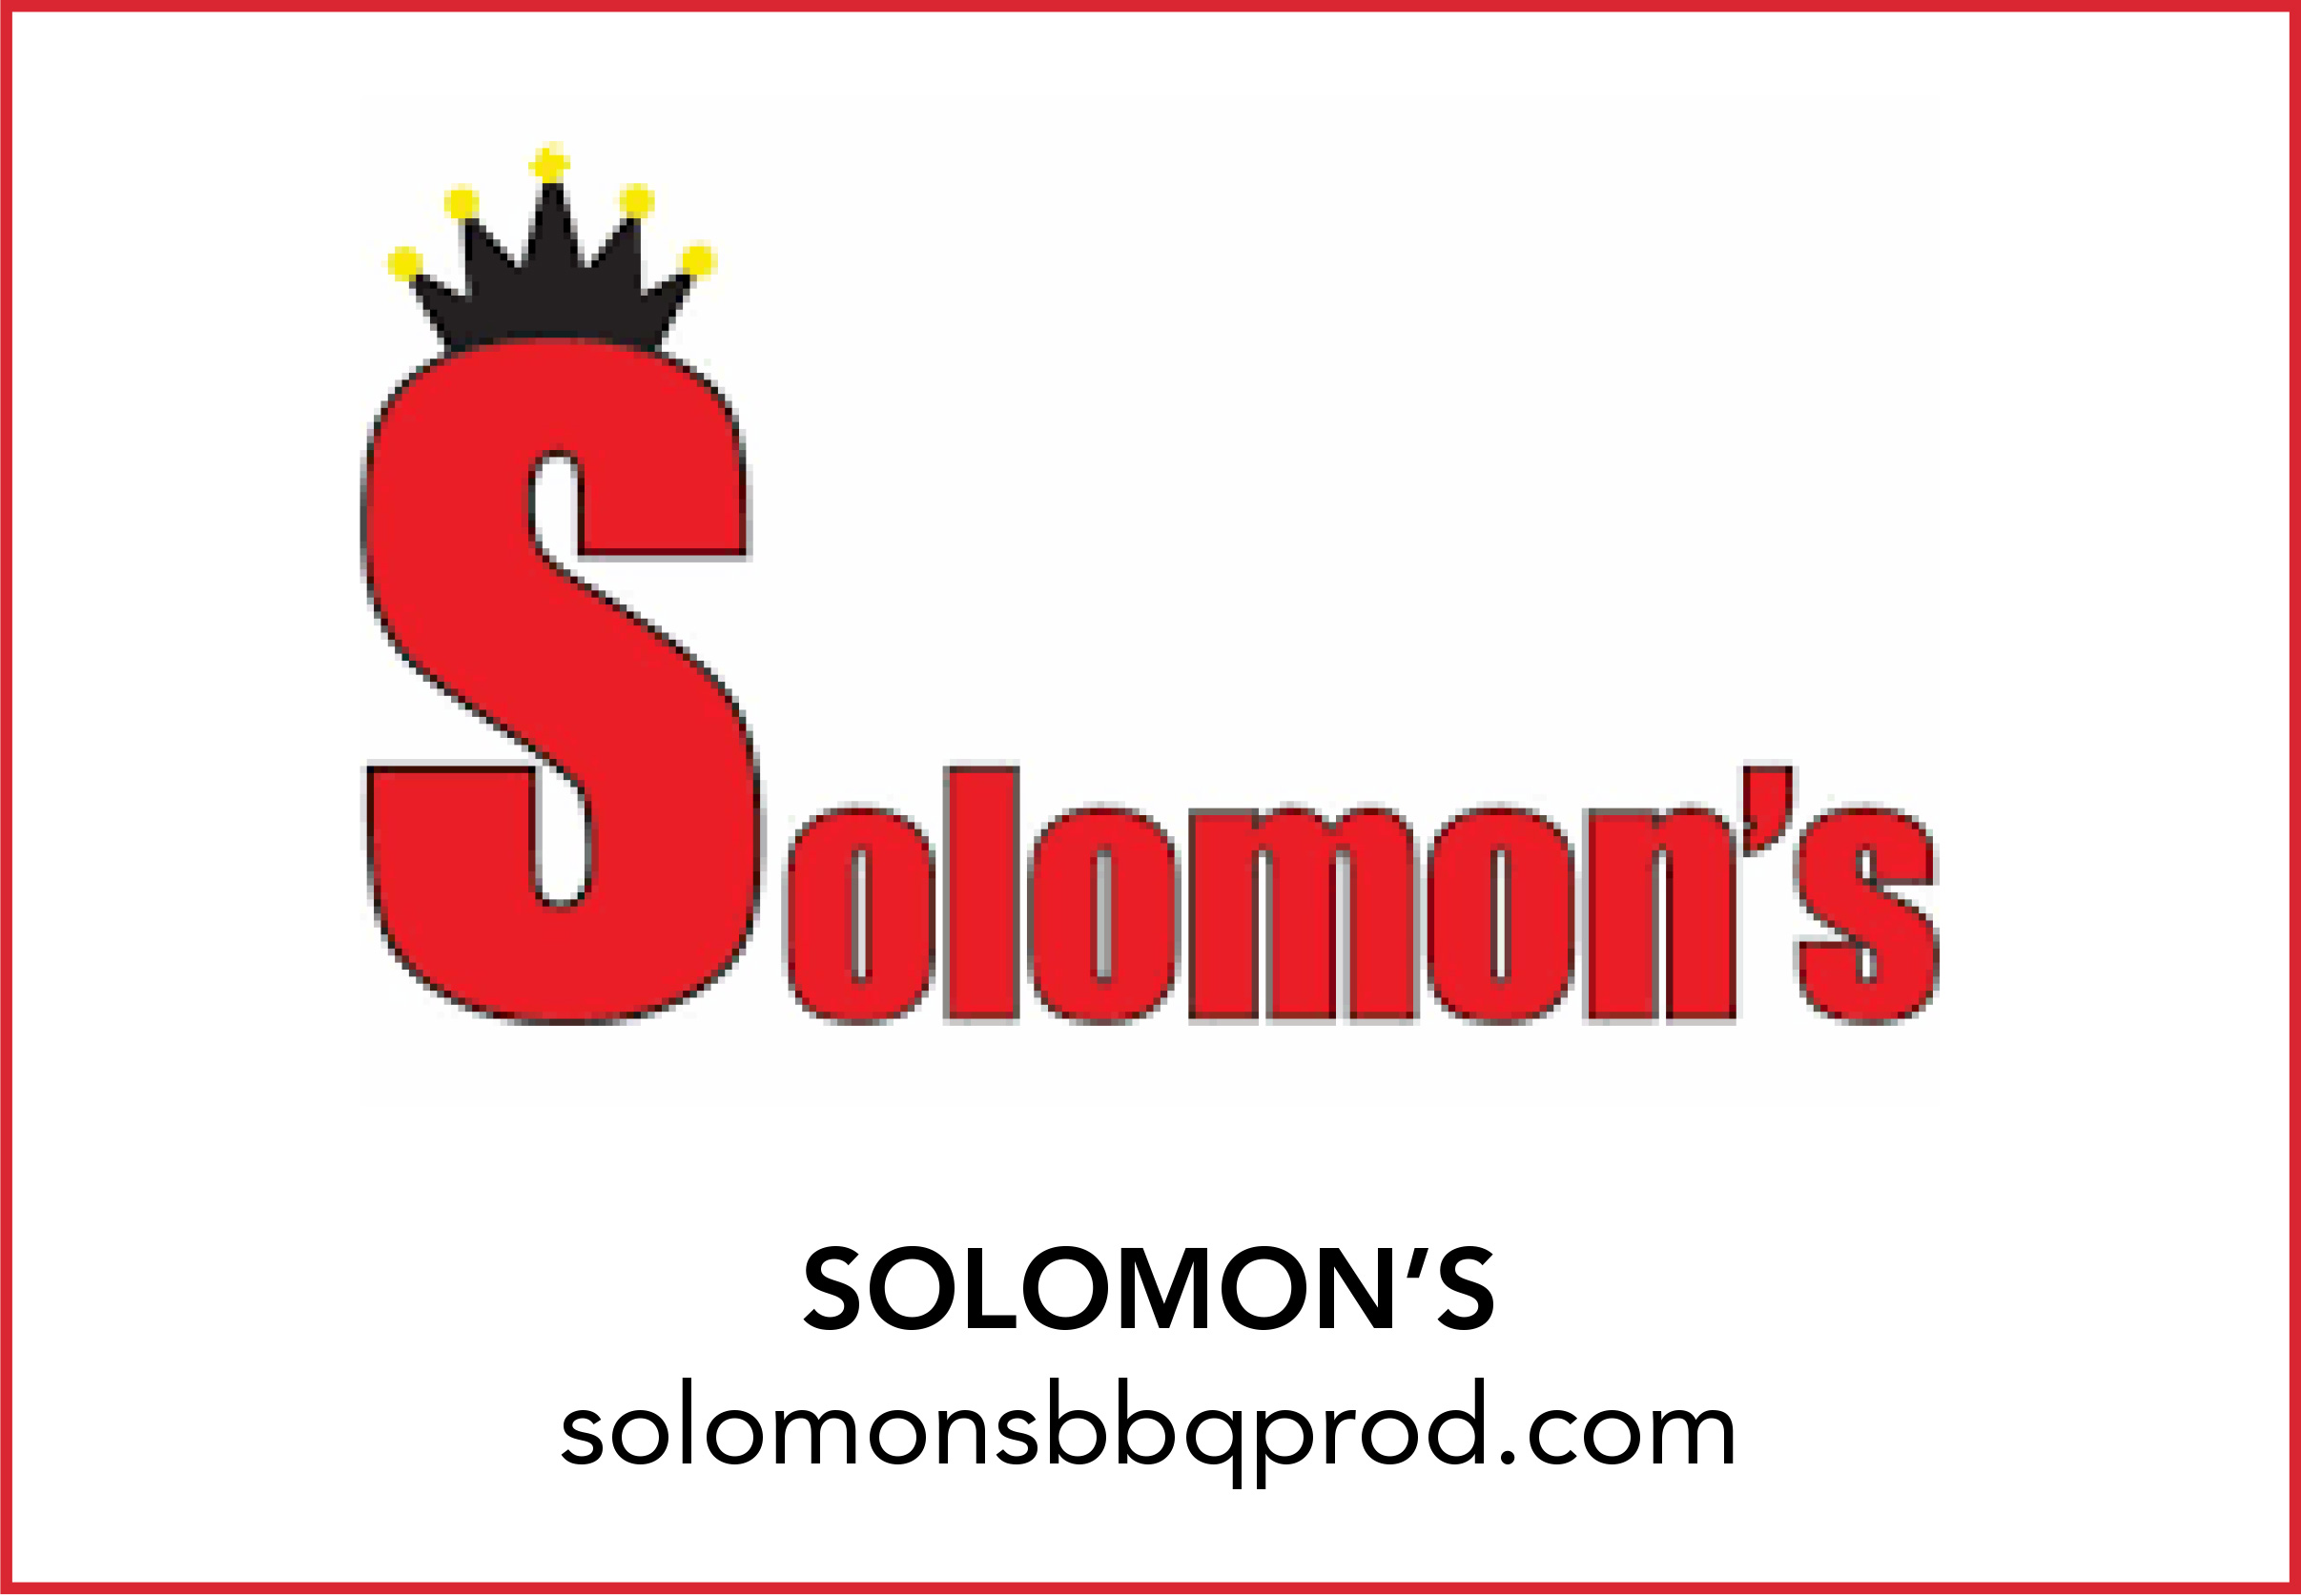 SOLOMON’S